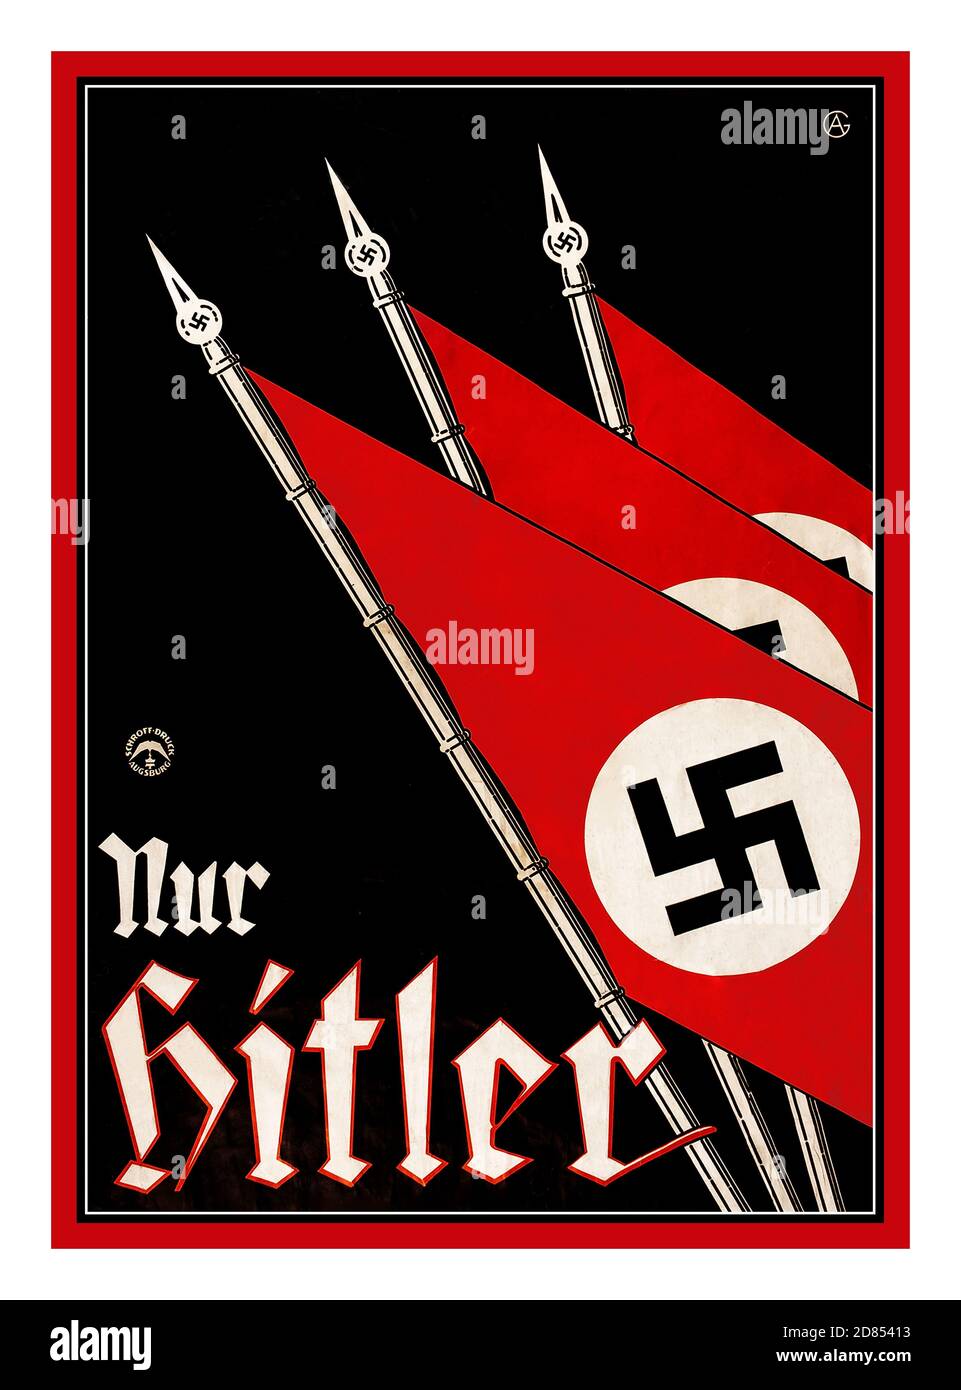 Vintage 1930 'solo Hitler" nur HITLER propaganda Cartel Litografía con banderas de Swastika. NSDAP elección presidencial nazi c.1932 Alemania. El Partido Nacional Socialista Alemán de los trabajadores (NSDAP) fue fundado en 1920. La ideología se basaba en el nacionalismo y el antisemitismo alemanes. En 1921, Adolf Hitler se convirtió en el líder del NSDAP, una posición que más tarde lo impulsaría a convertirse en dictador del Tercer Reich Alemán de la Alemania Nazi. El simbolismo de propaganda populista del NSDAP se mantuvo en la mente de los votantes alemanes. Foto de stock